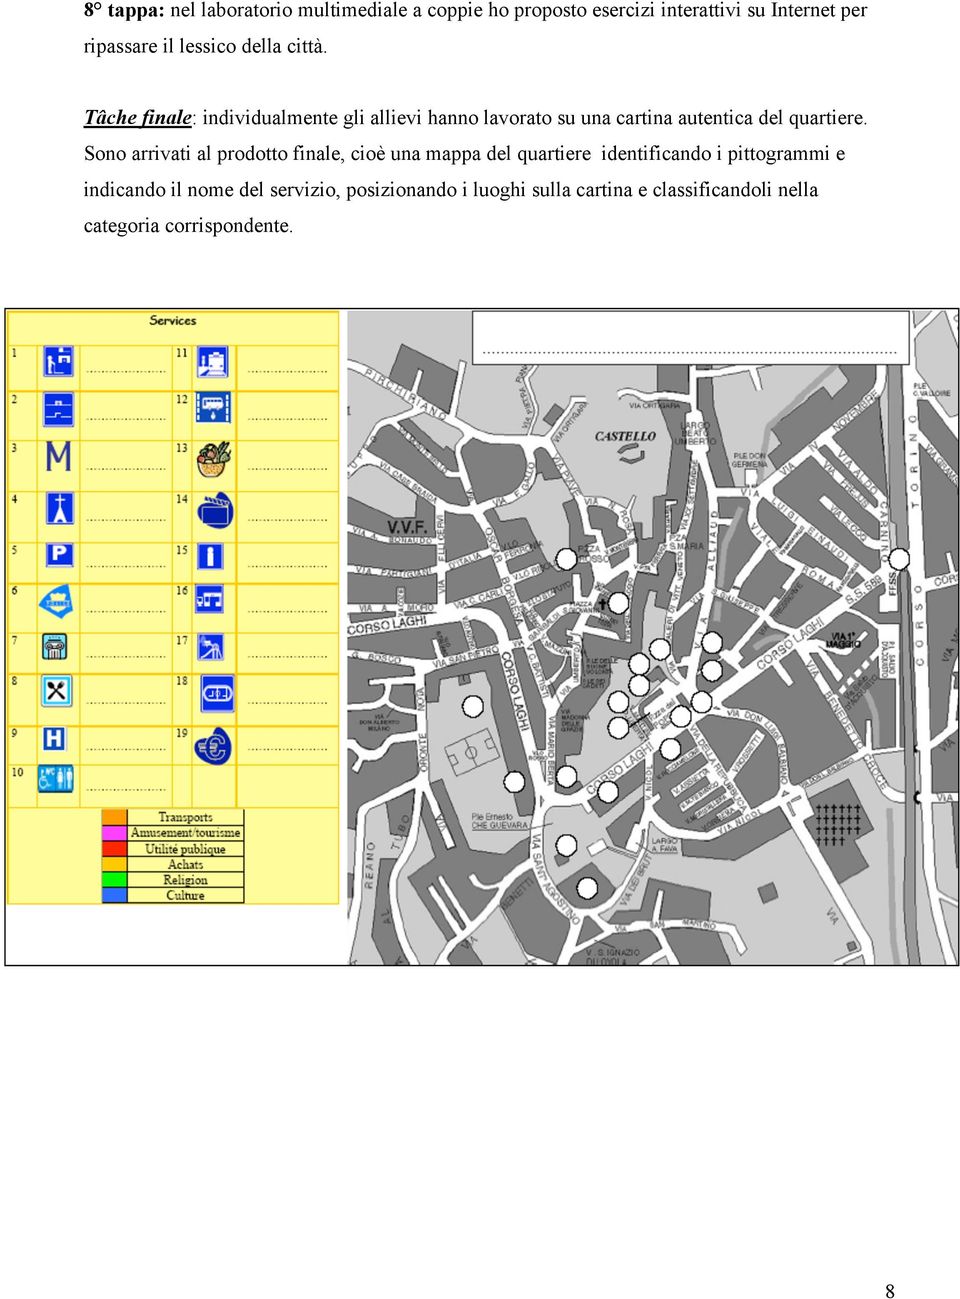 Tâche finale: individualmente gli allievi hanno lavorato su una cartina autentica del quartiere.